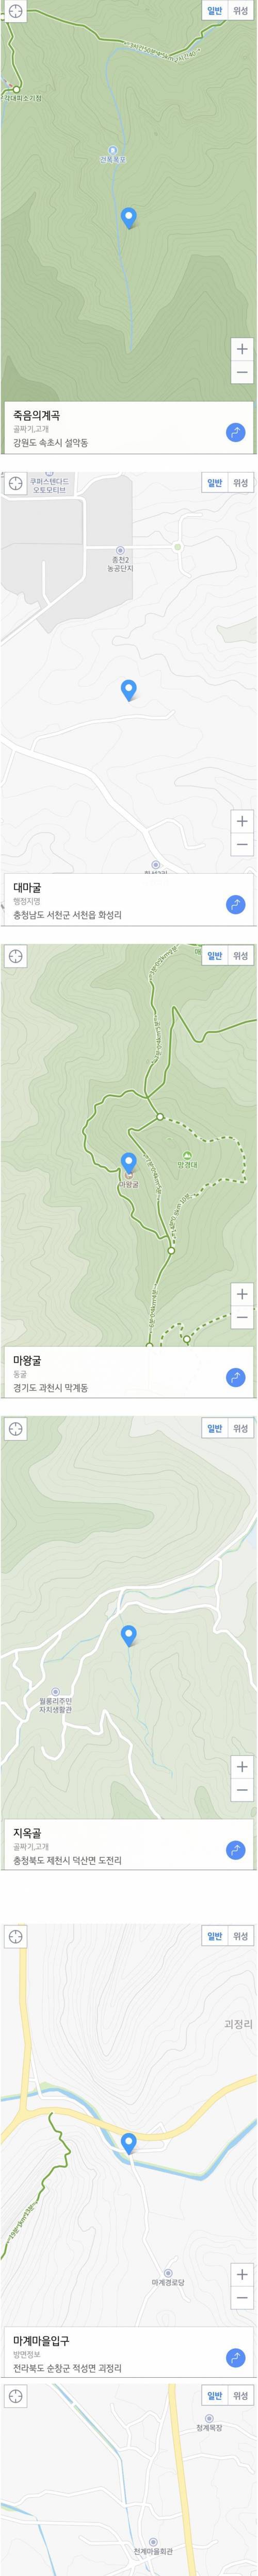 1 의외로 한국에 있는 지역 마계경로당 VS 천계마을회관.jpg